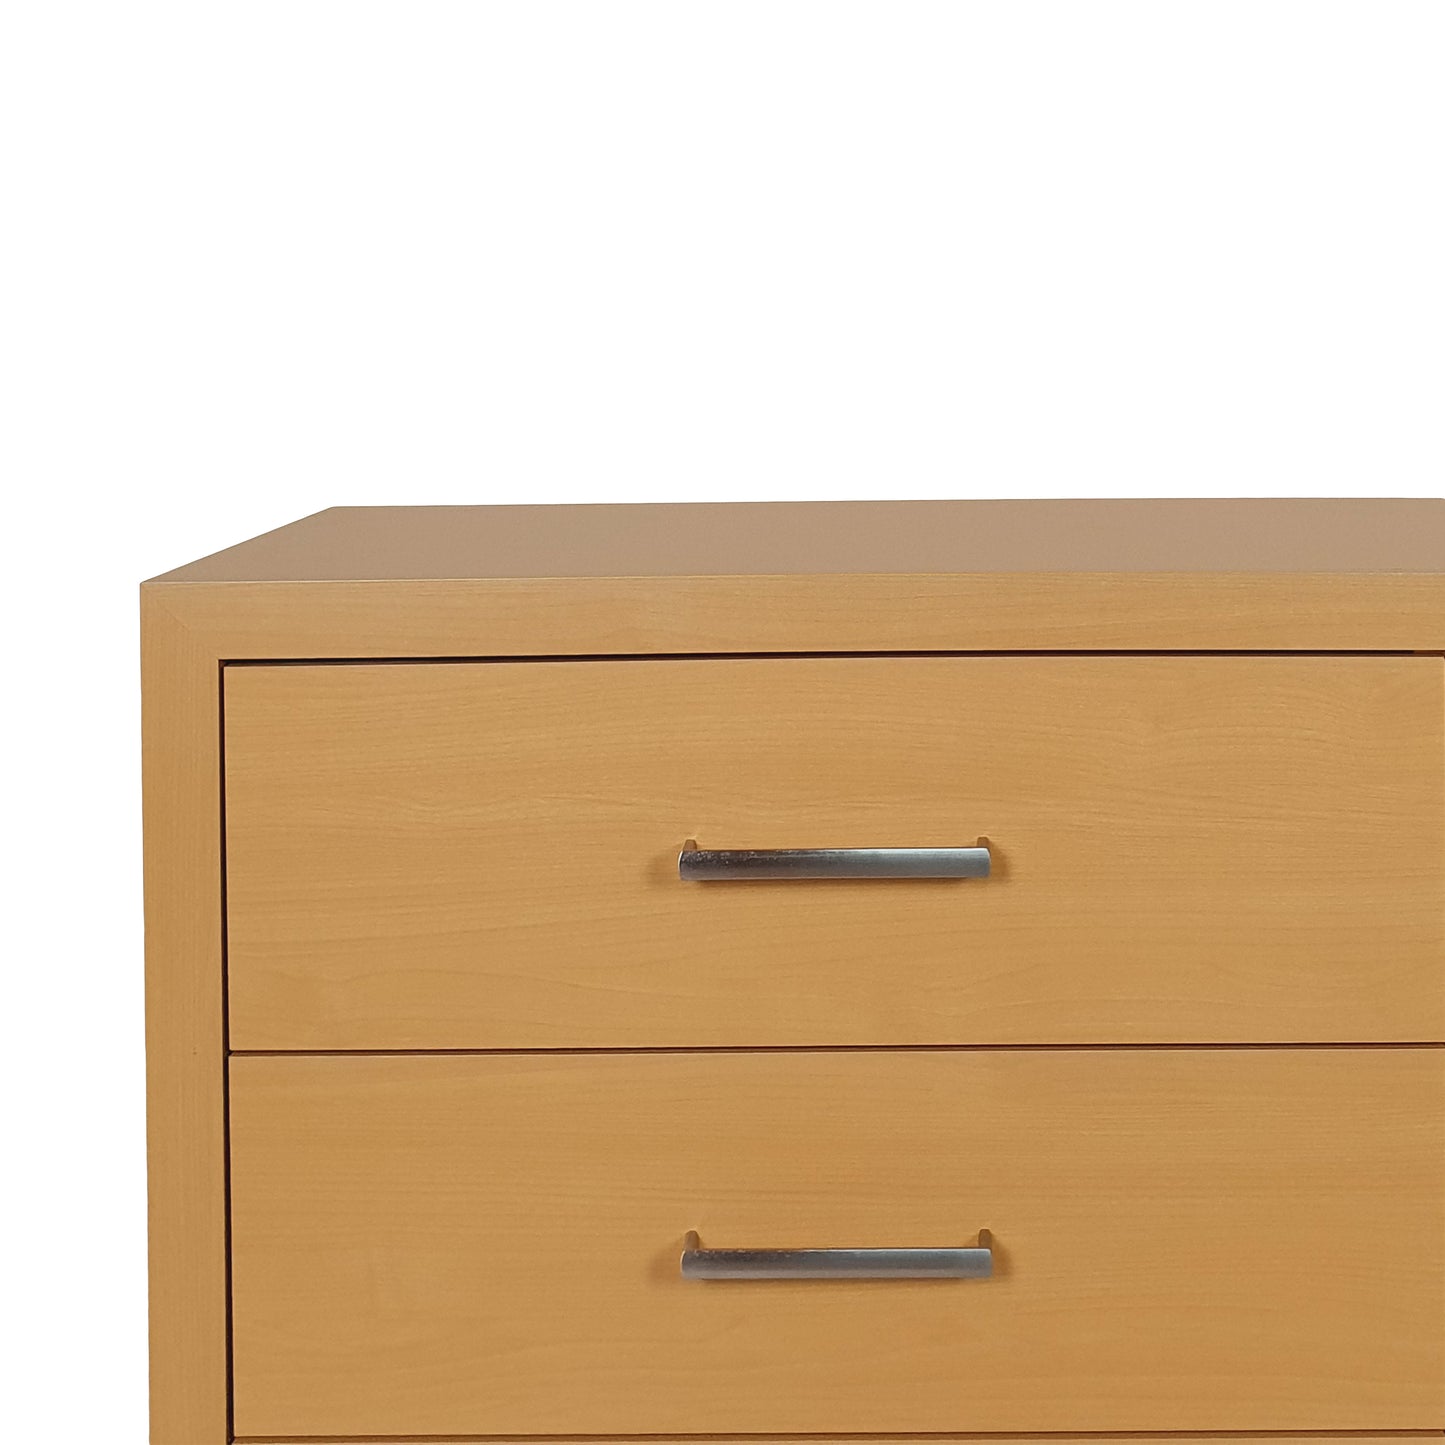 Borah Contemporary Faux Wood 6 Drawer Double Dresser